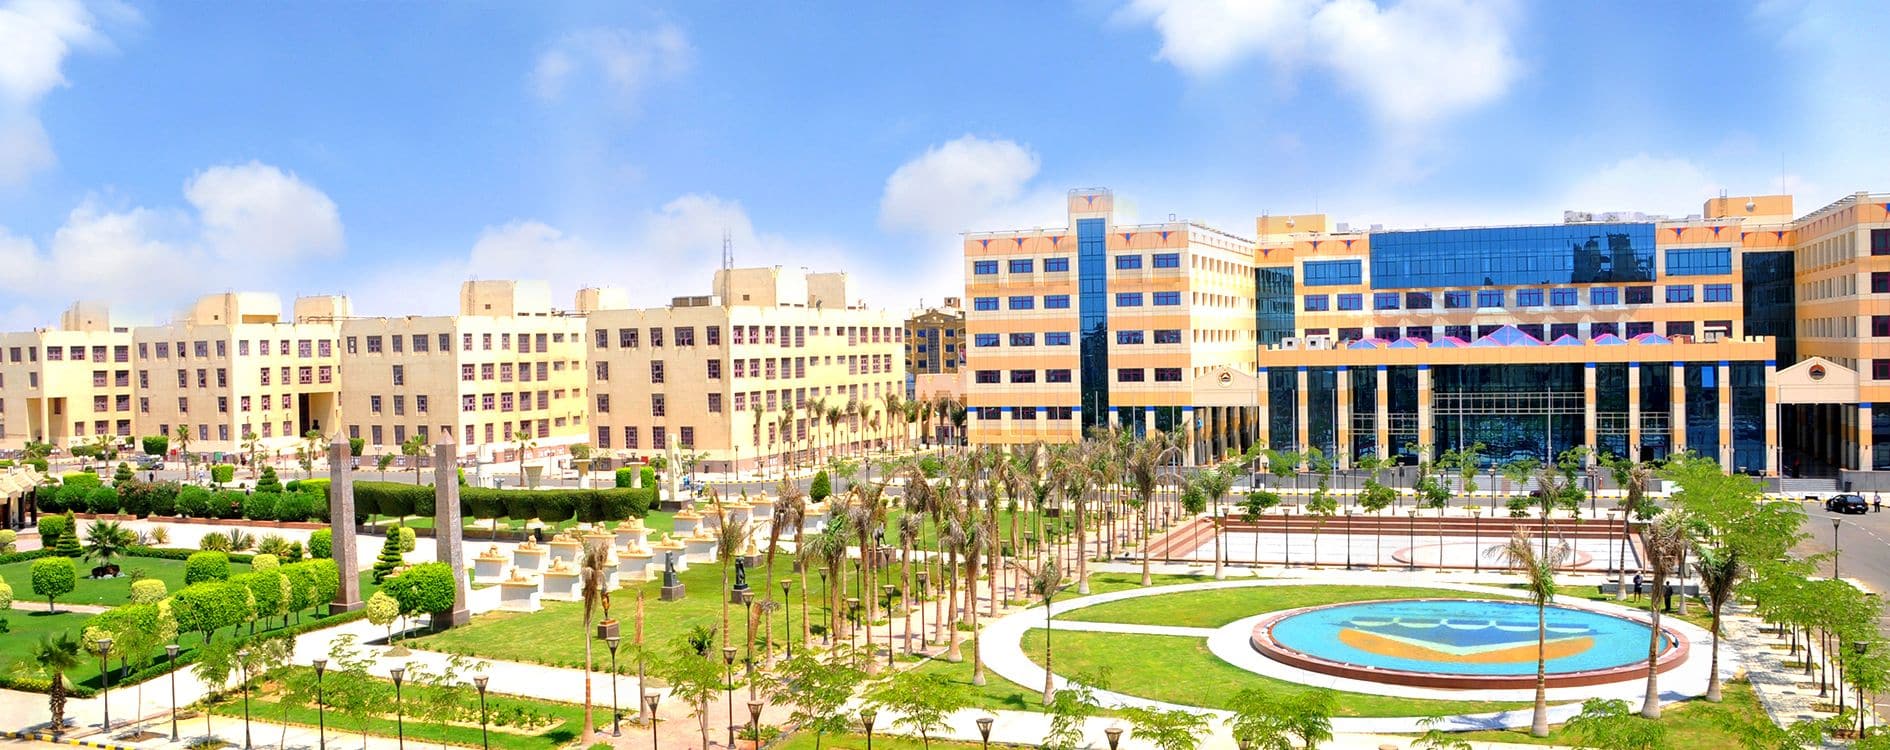 ترتيب الجامعات الخاصة في مصر